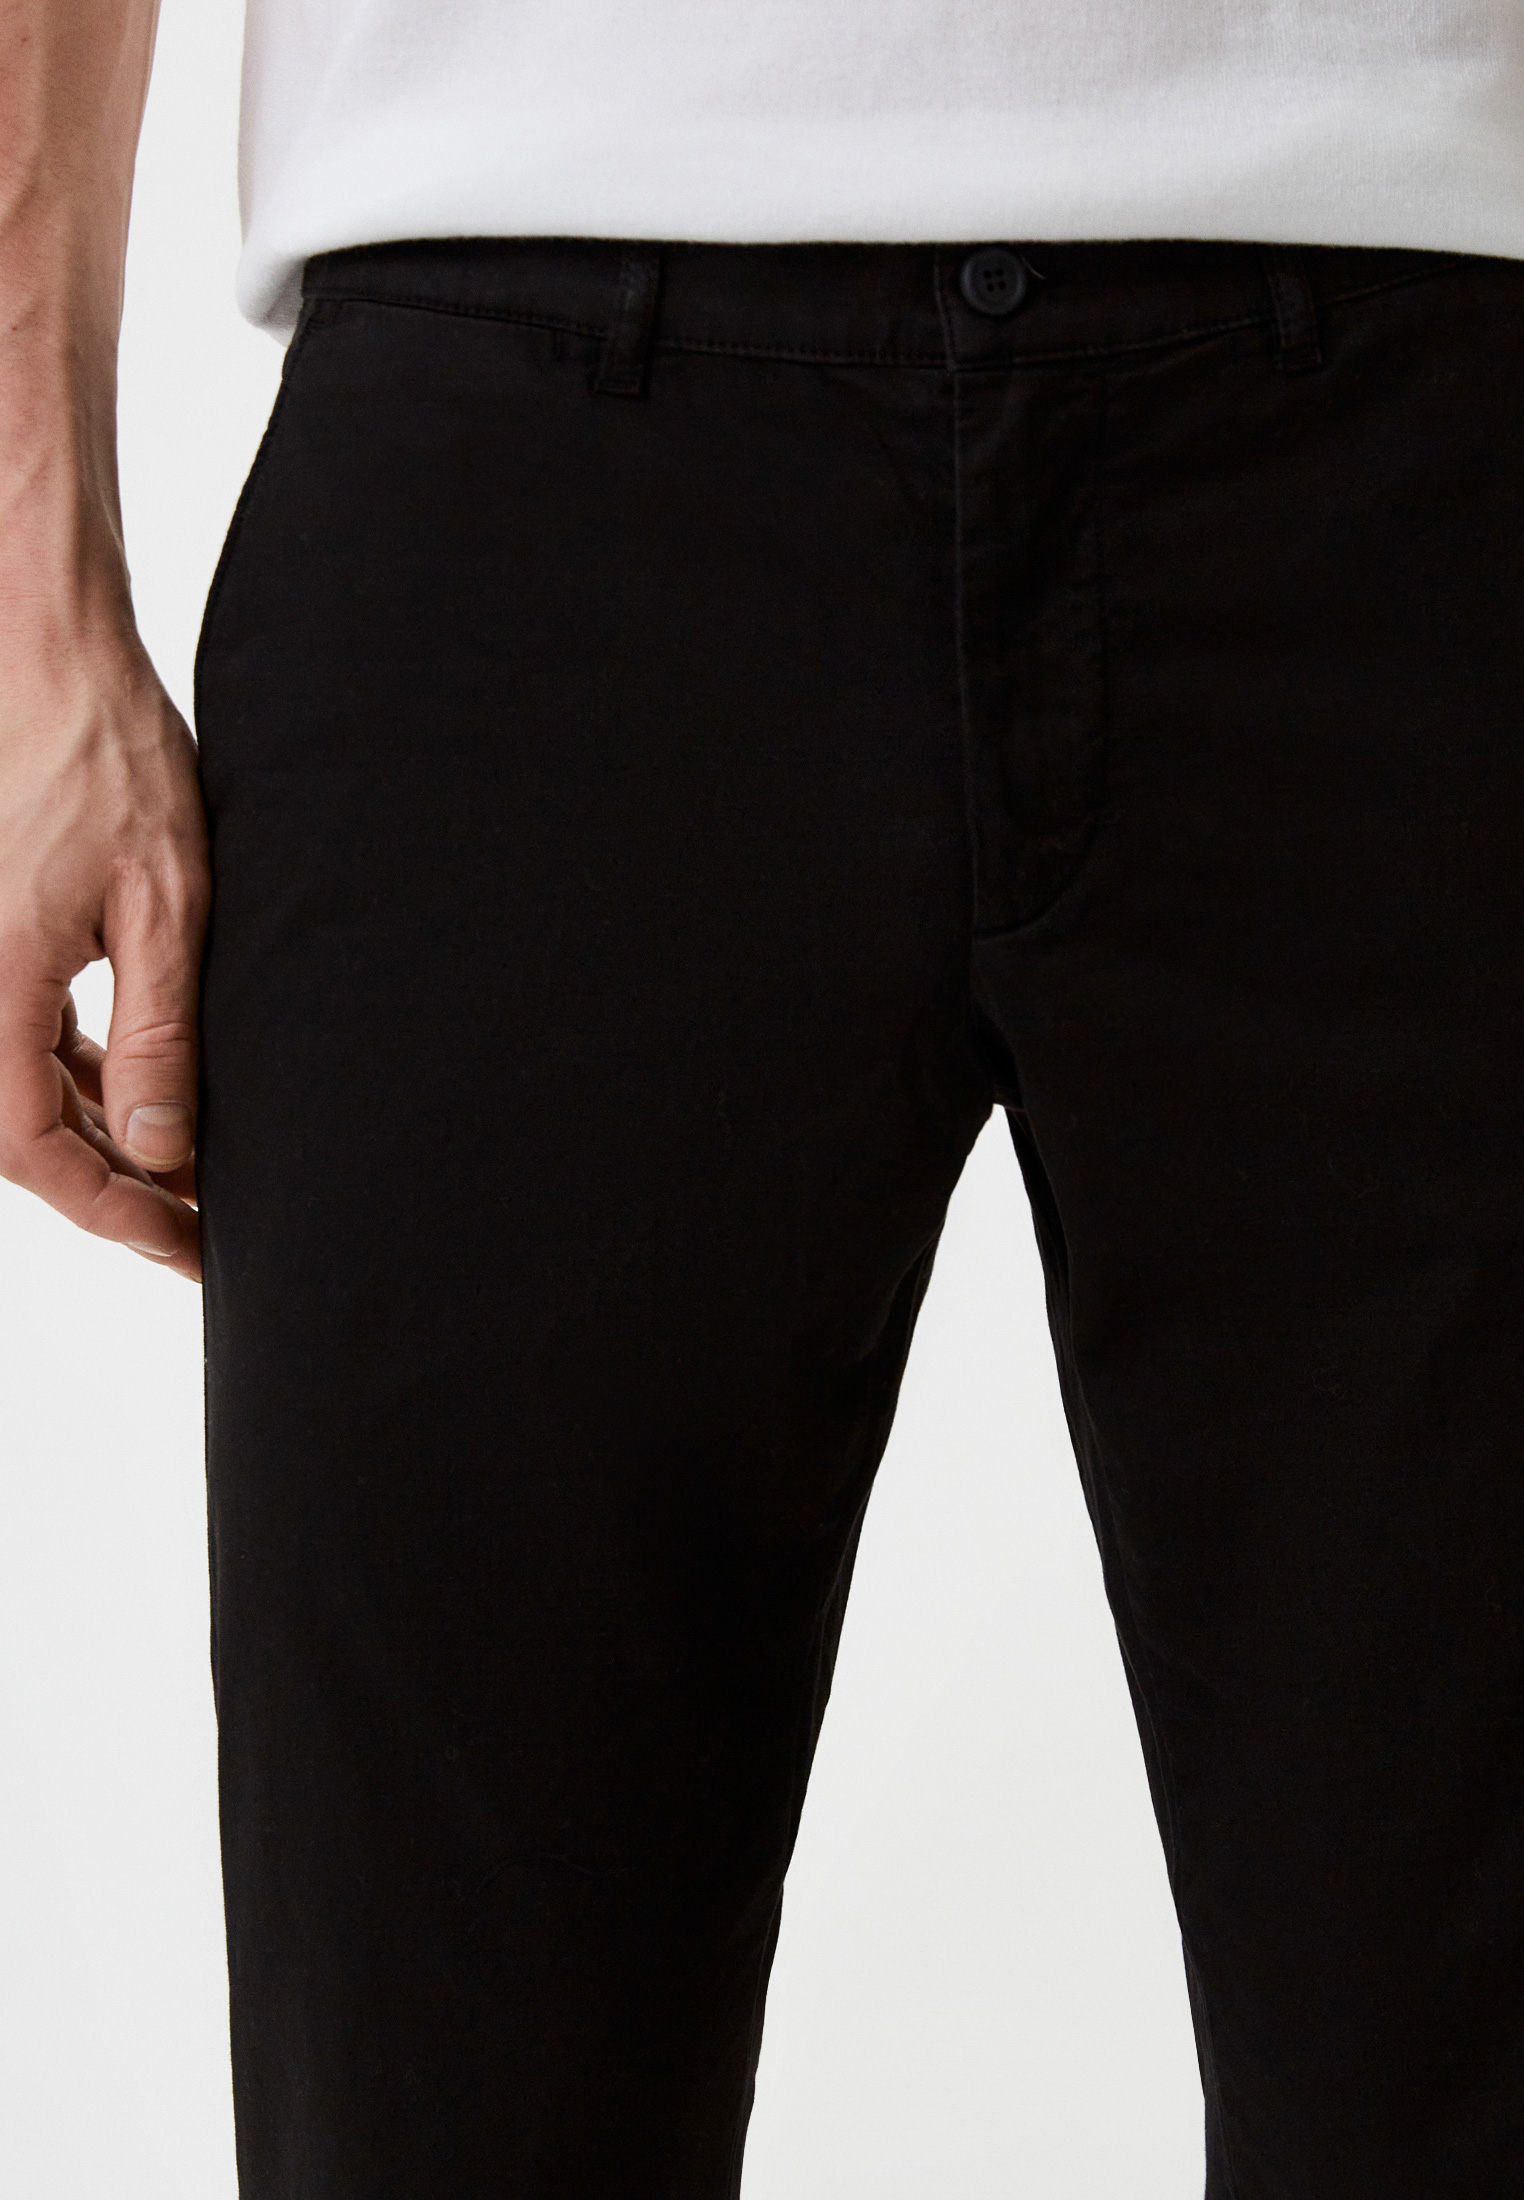 Мужские повседневные брюки Bikkembergs (Биккембергс) C P 001 06 S 3513: изображение 4